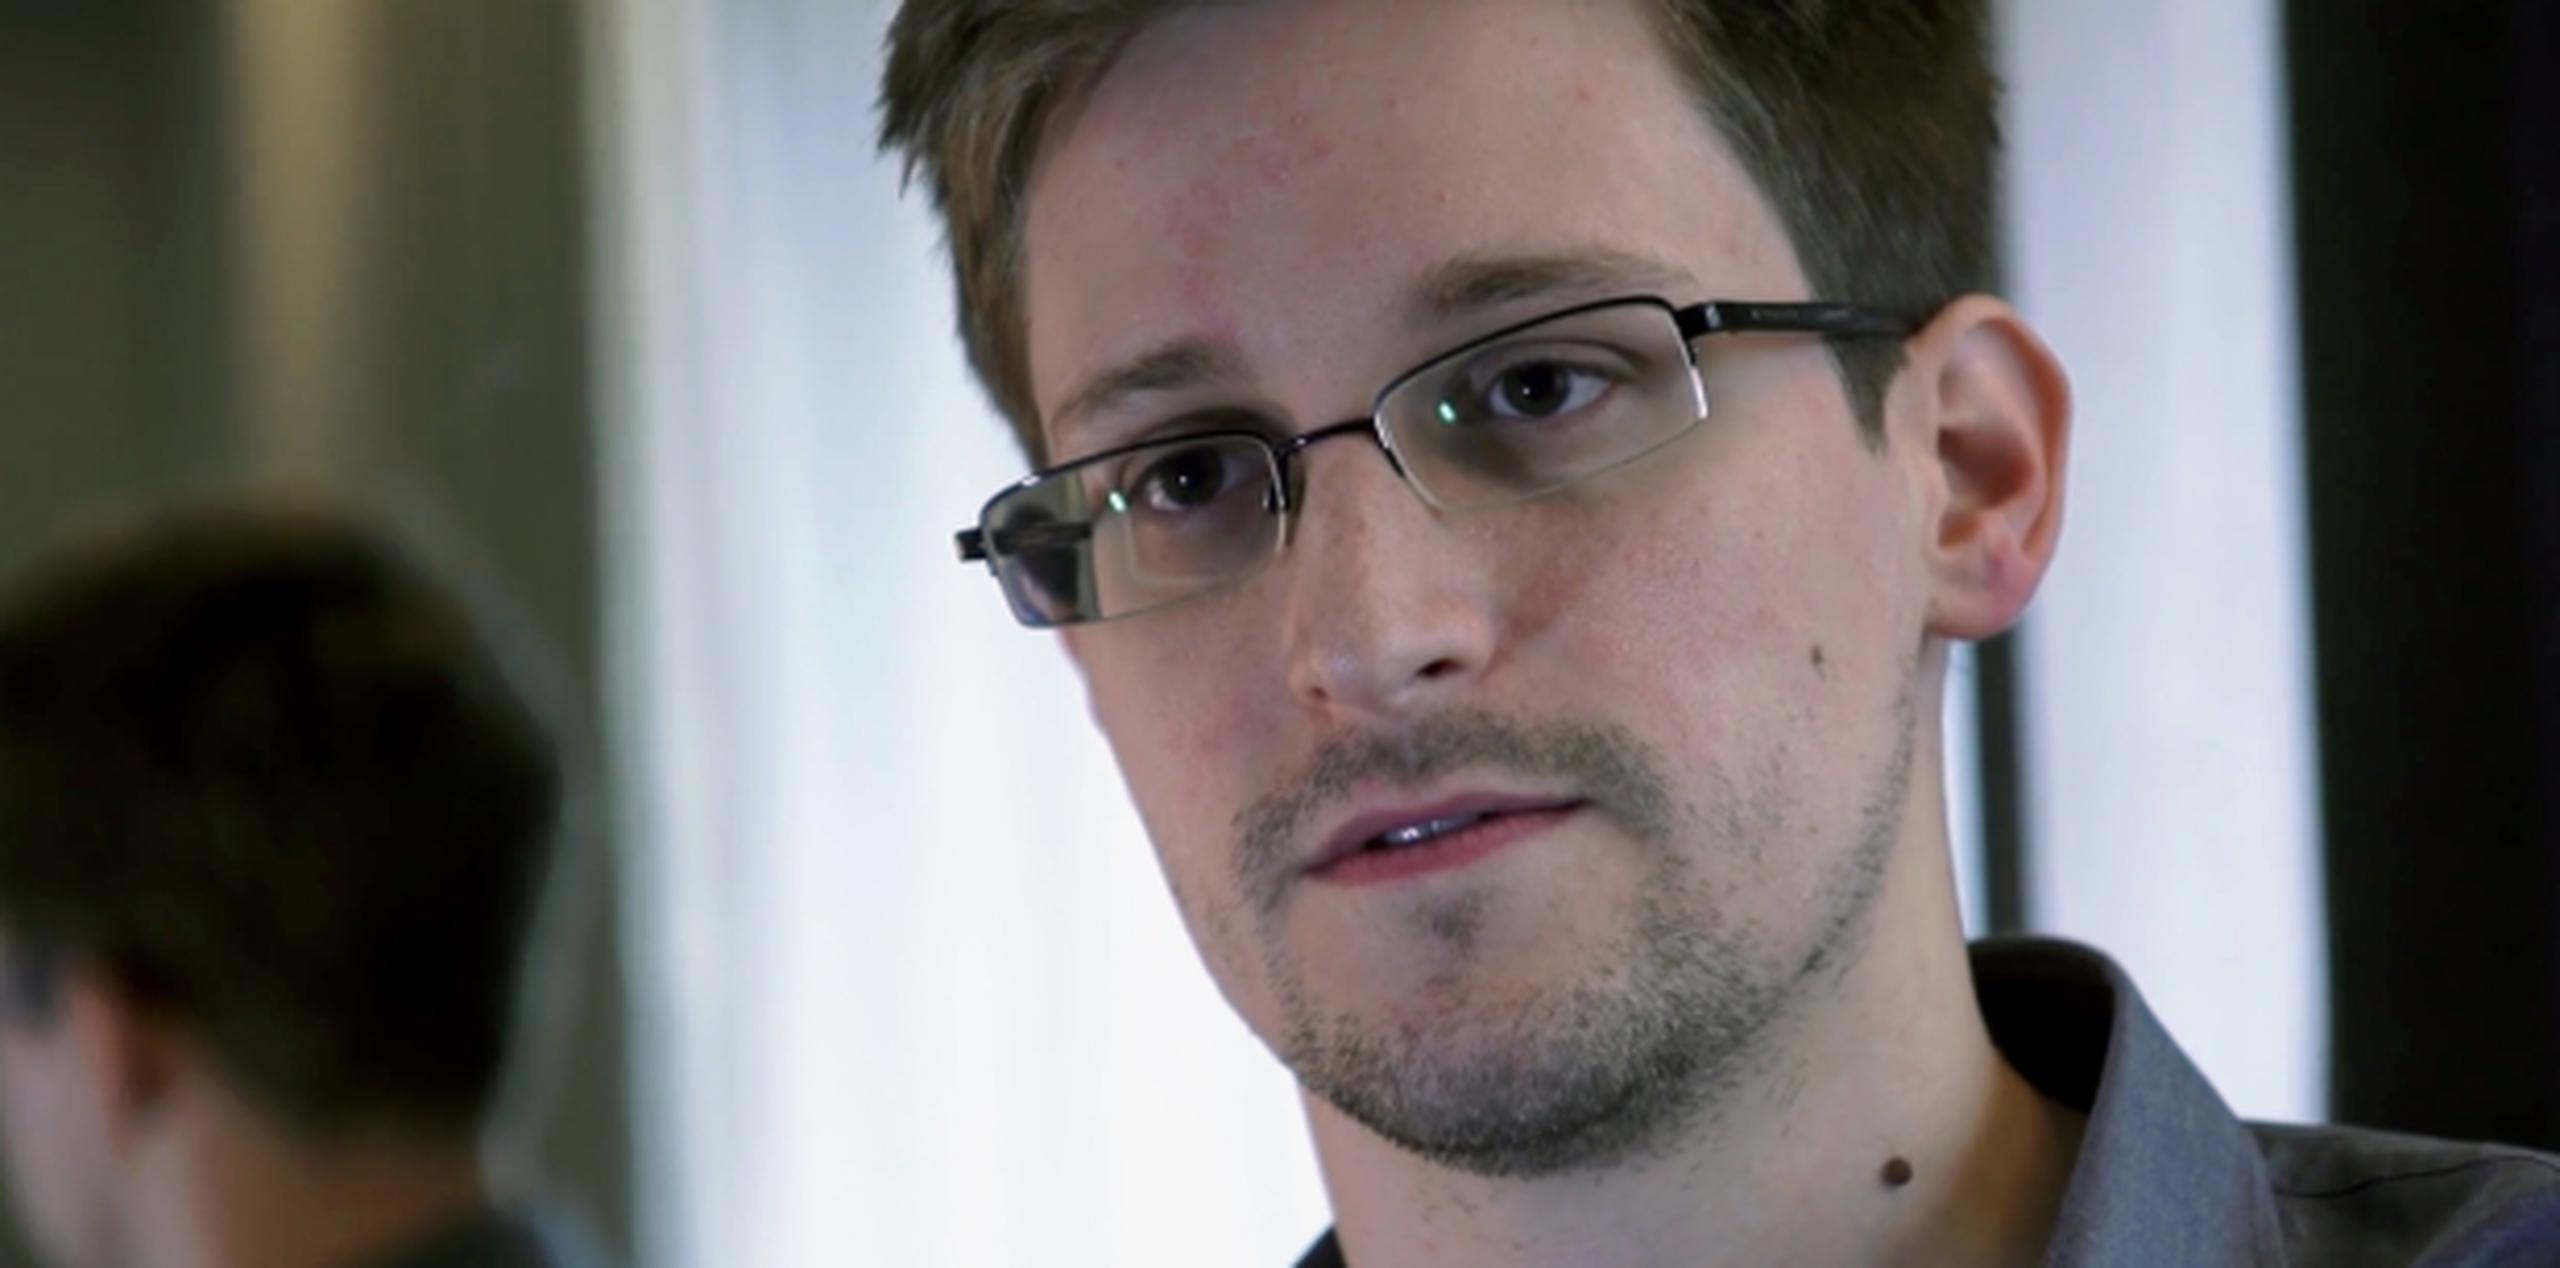 Edward Snowden es buscado por filtrar datos de ciberespionaje en Estados Unidos. (EFE)(AP)